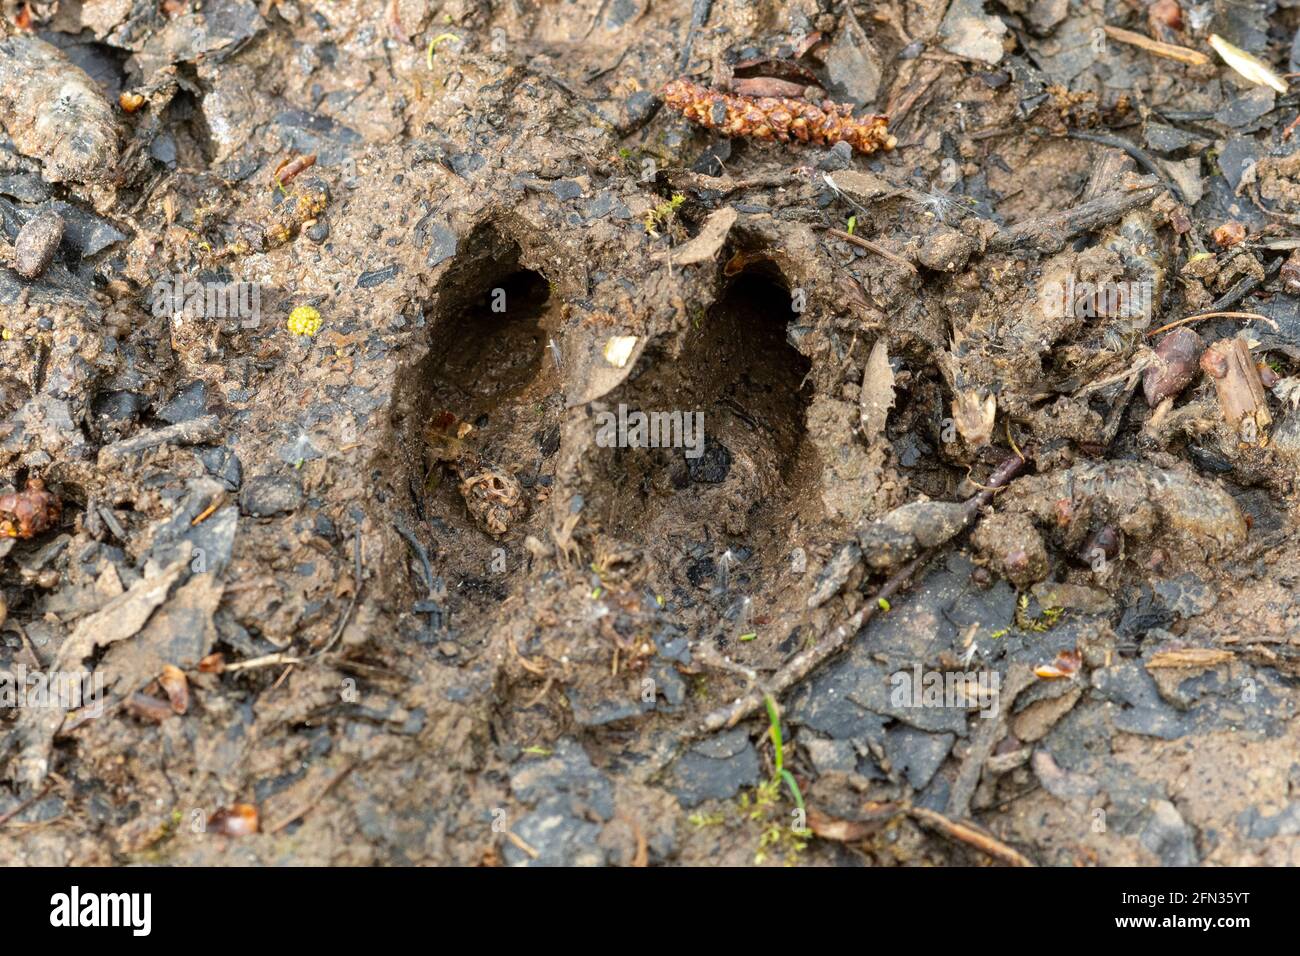 Roe deer slots in mud, Capreolus capreolus footprints, animal signs Stock Photo